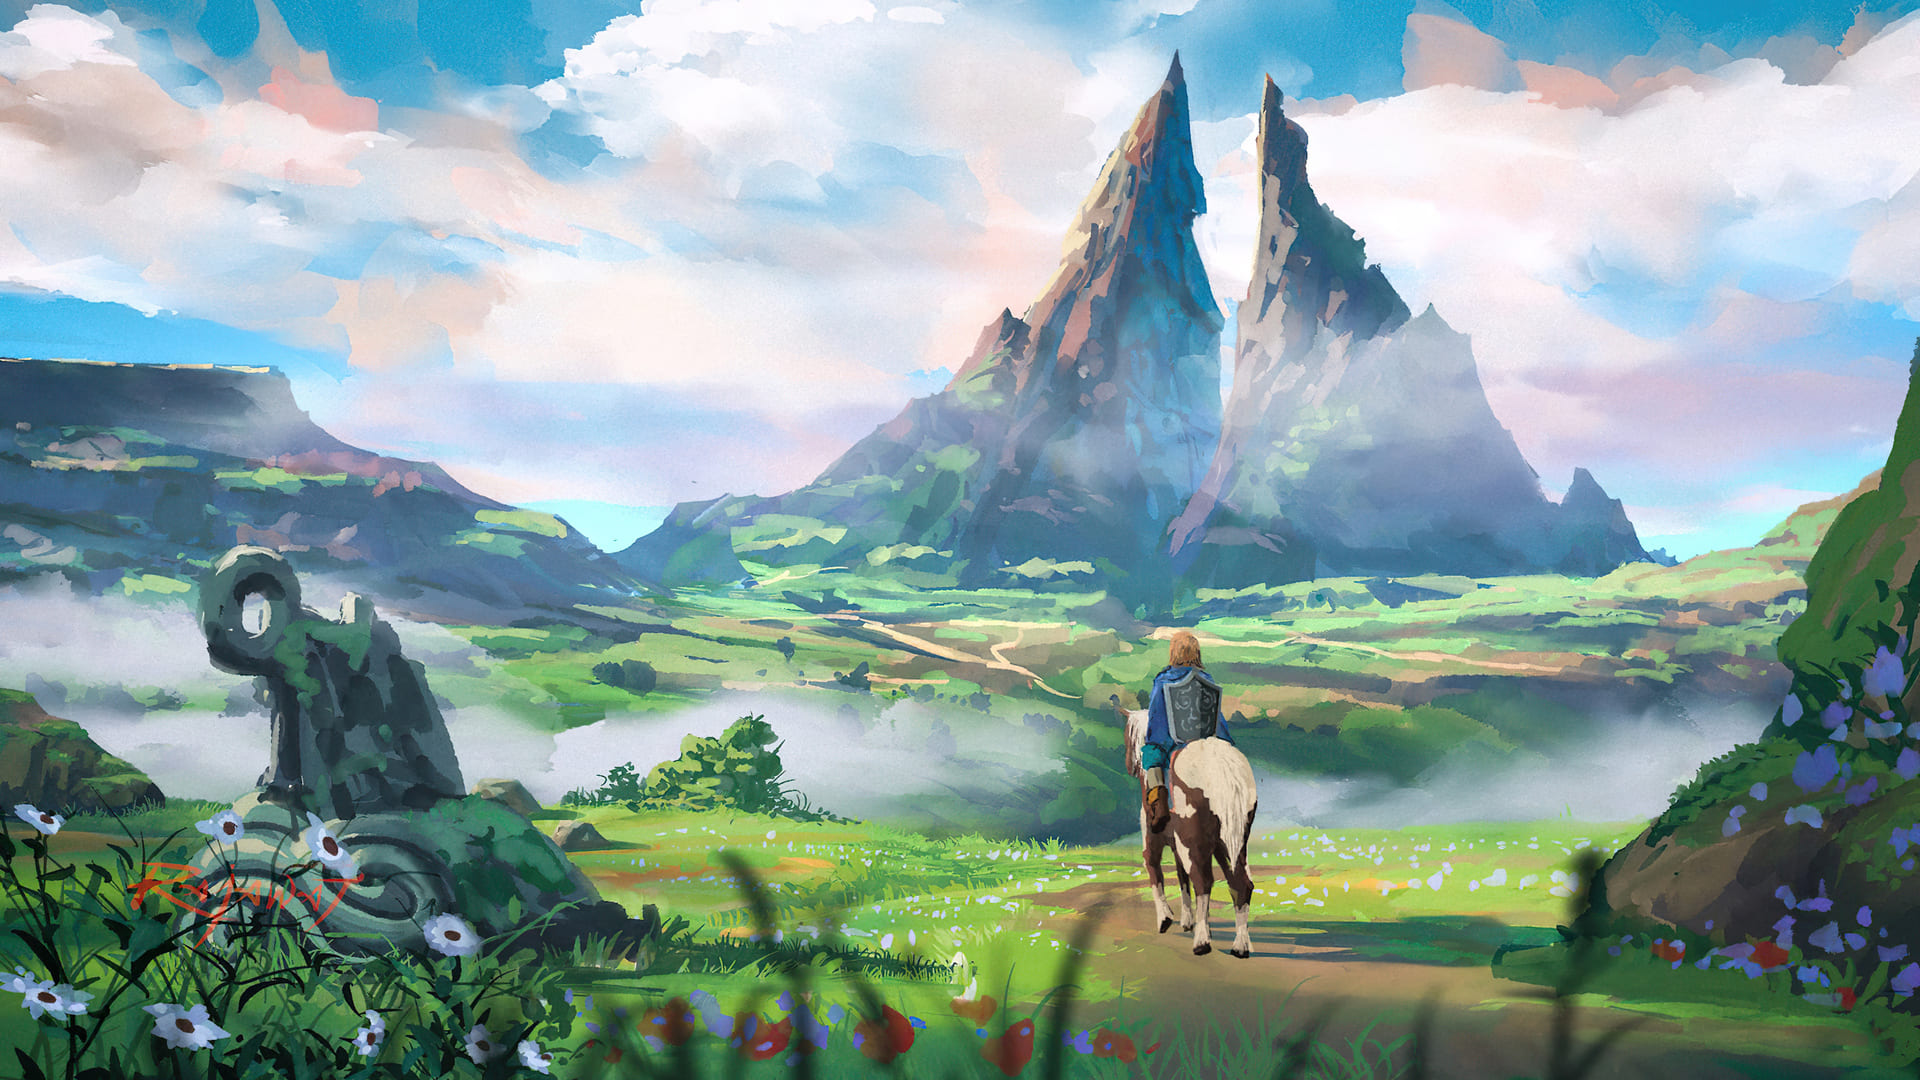 Zelda Desktop Backgrounds